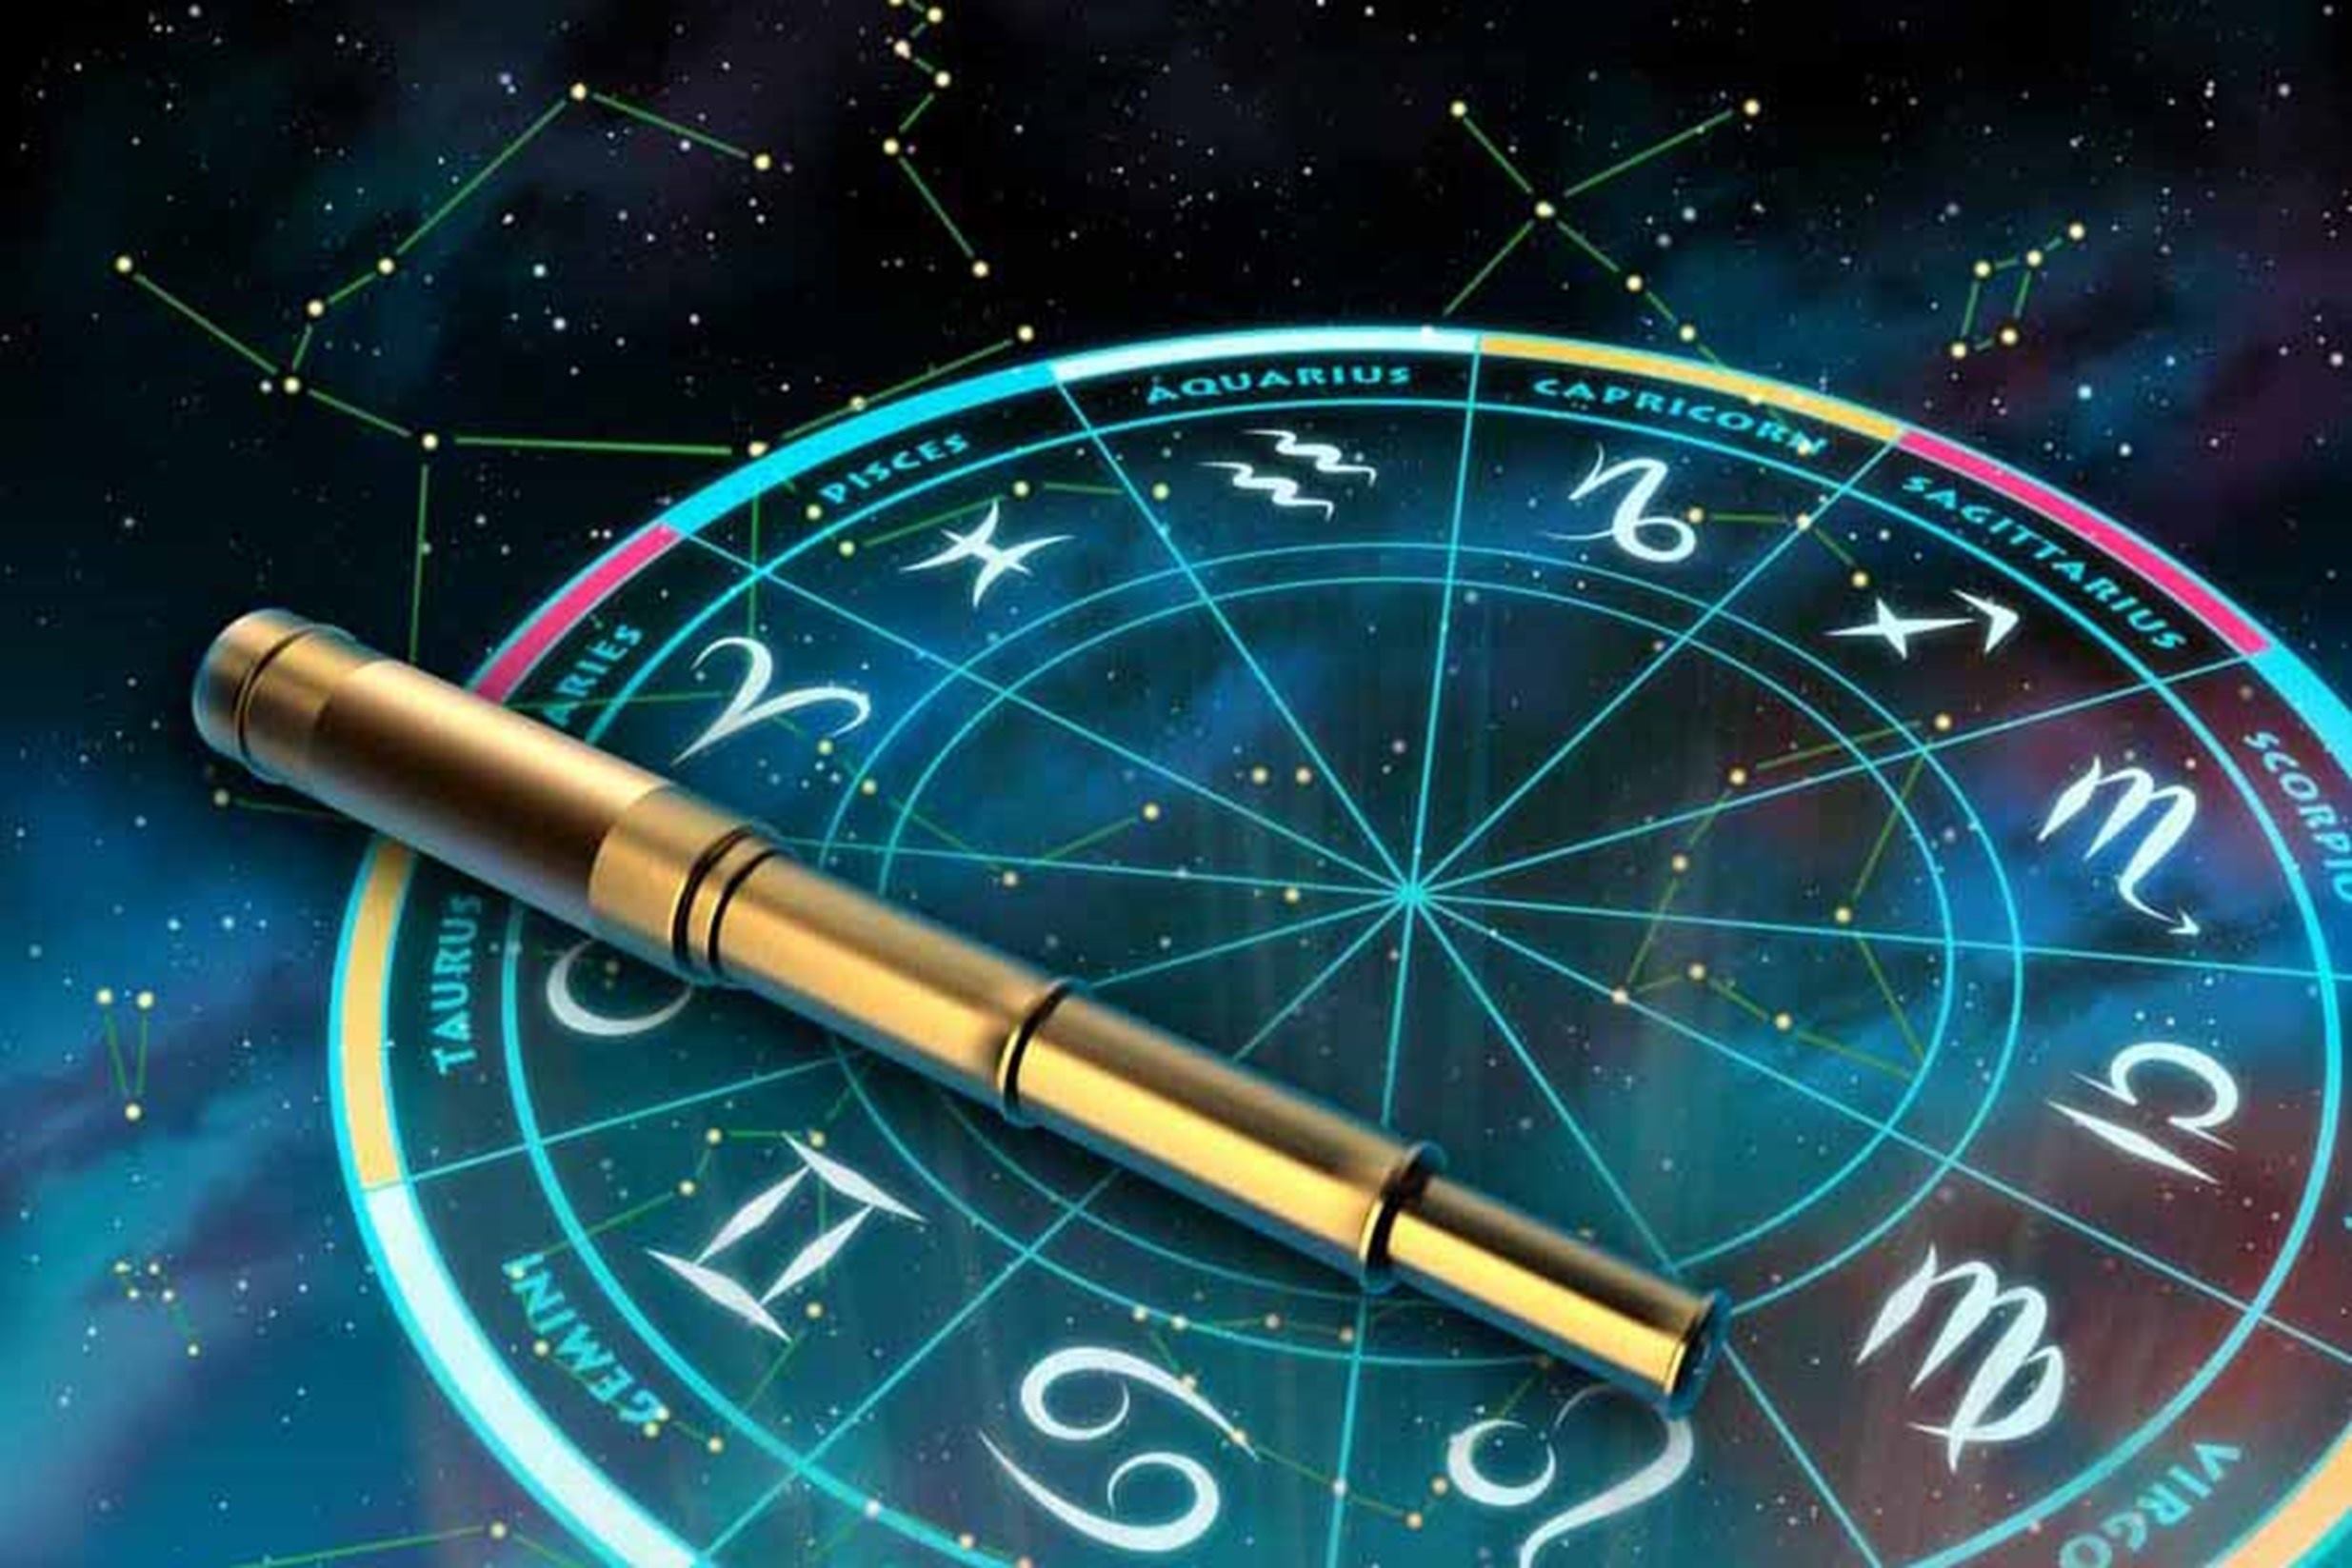 Está la rueda de los signos del zodiaco. De fondo está el universo y sobre la rueda hay un telescopio. 